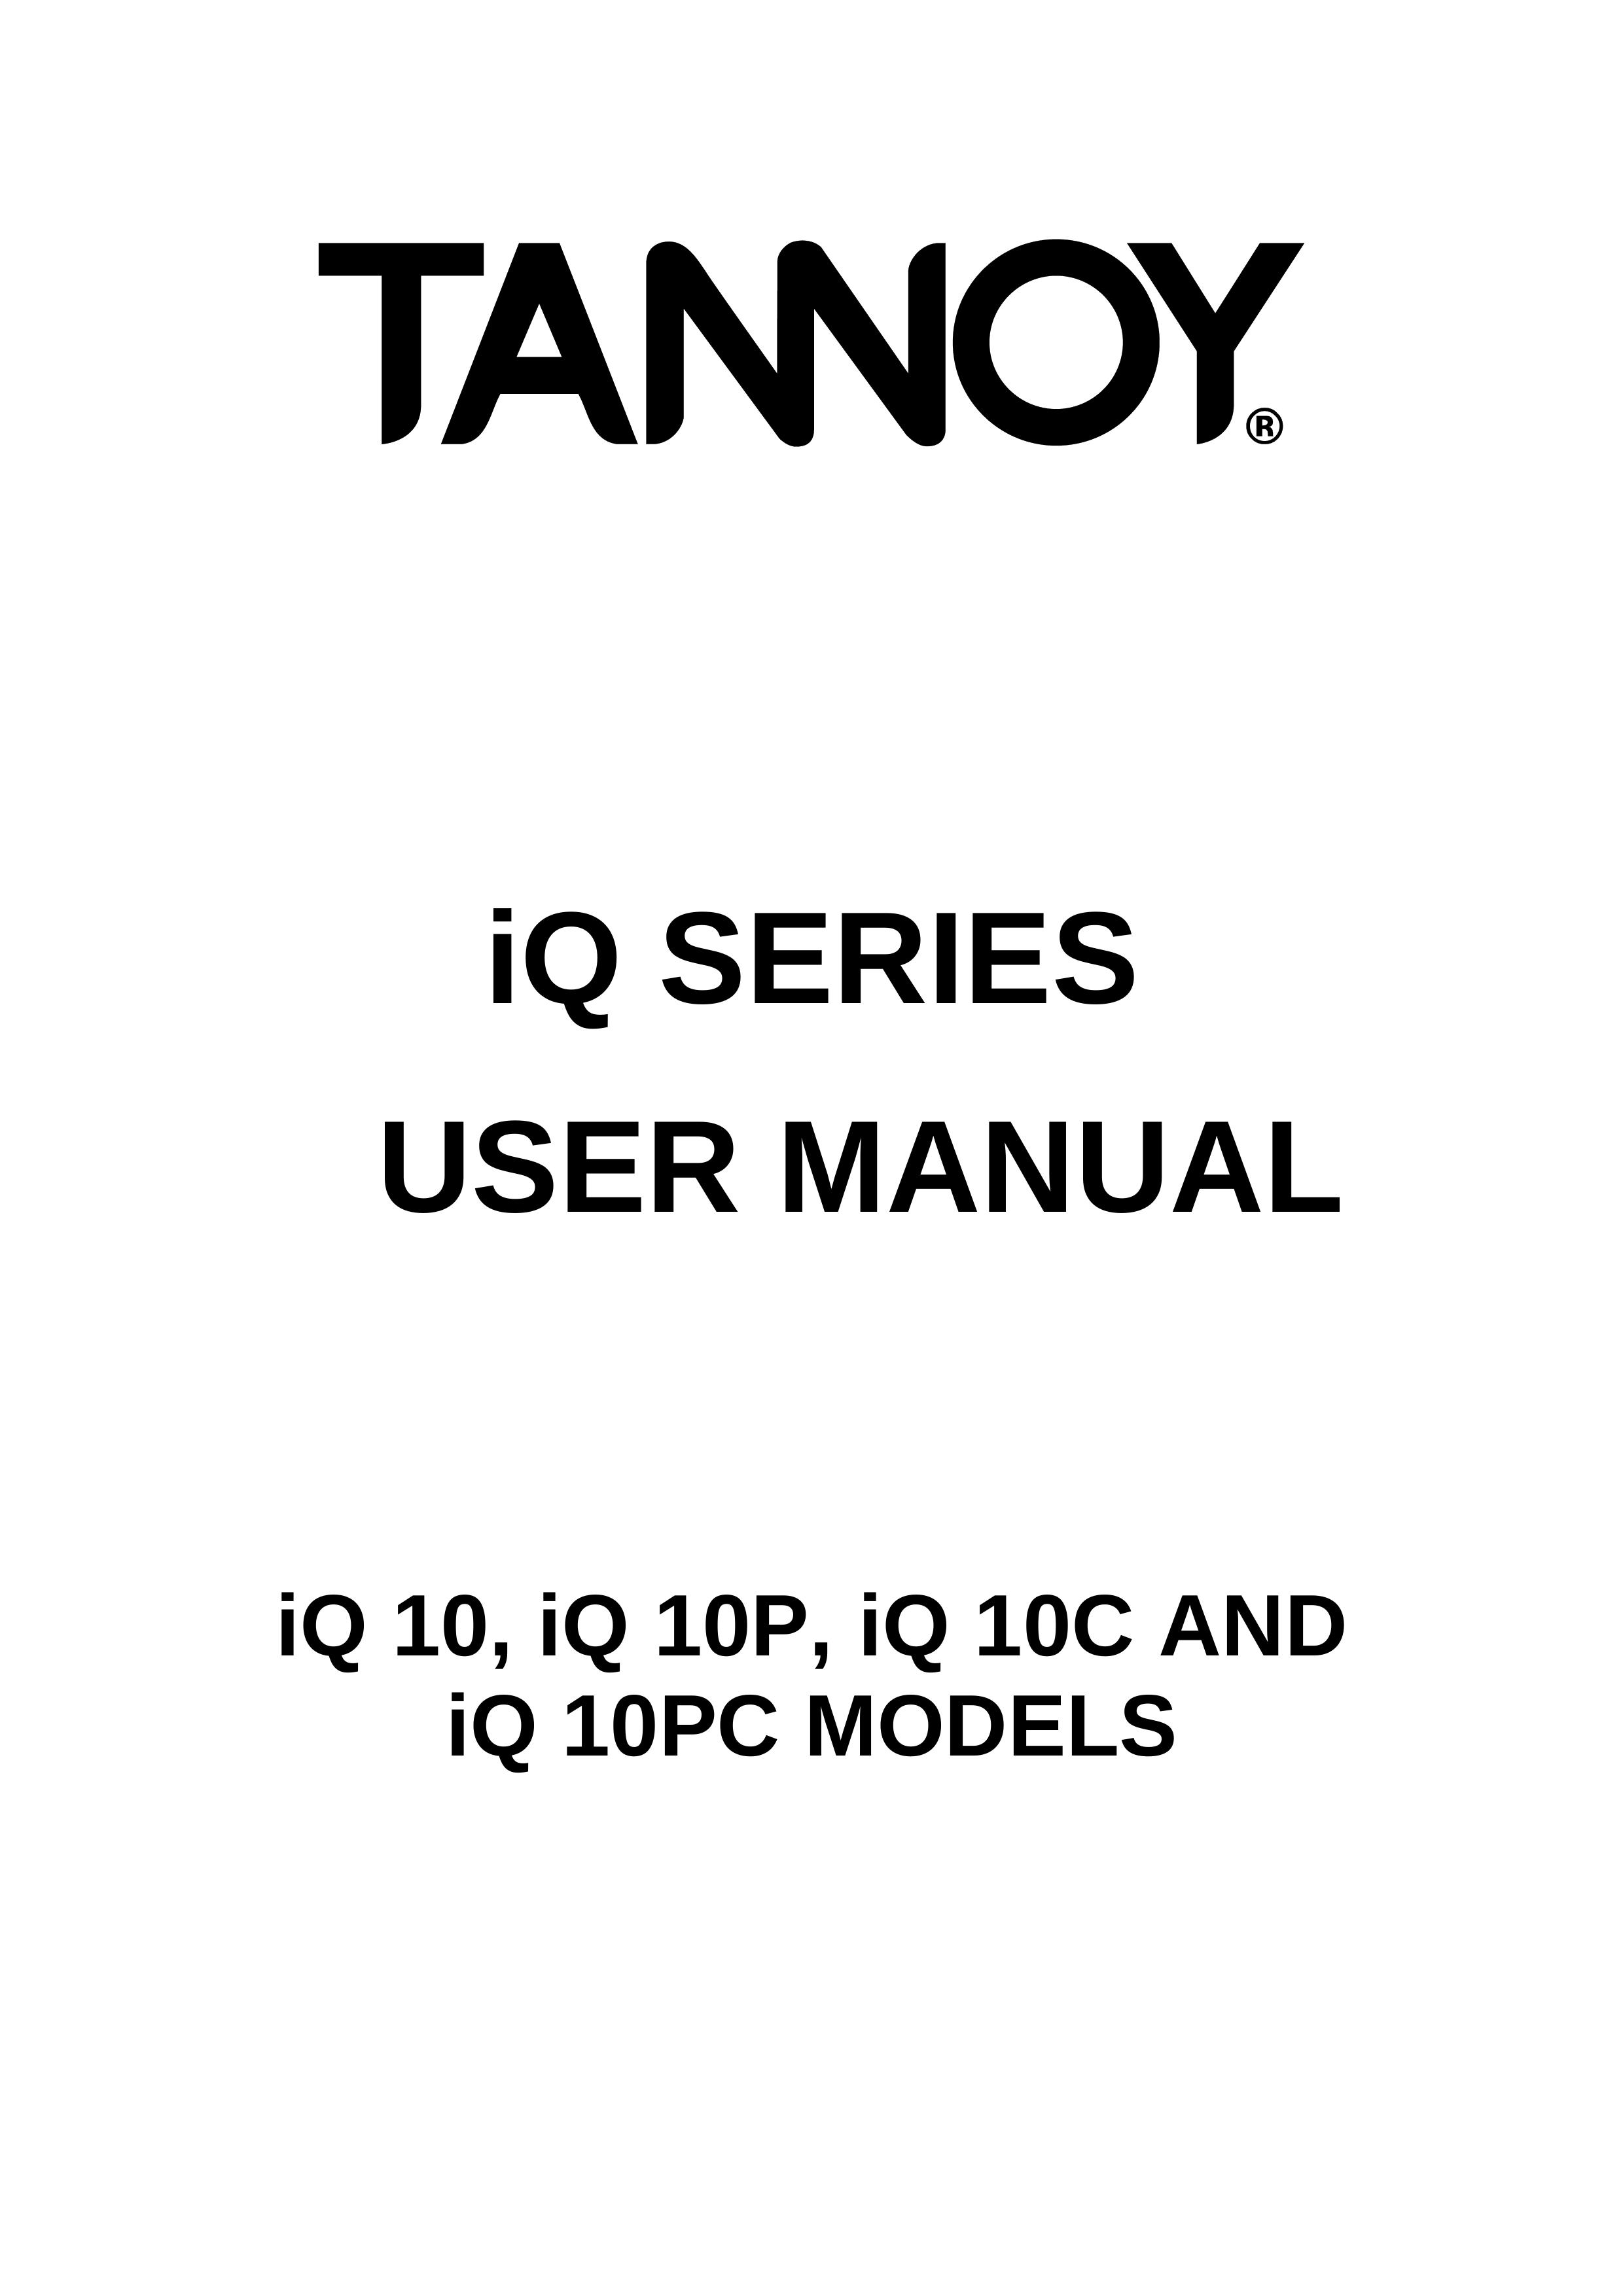 3Com iQ 10 Refrigerator User Manual